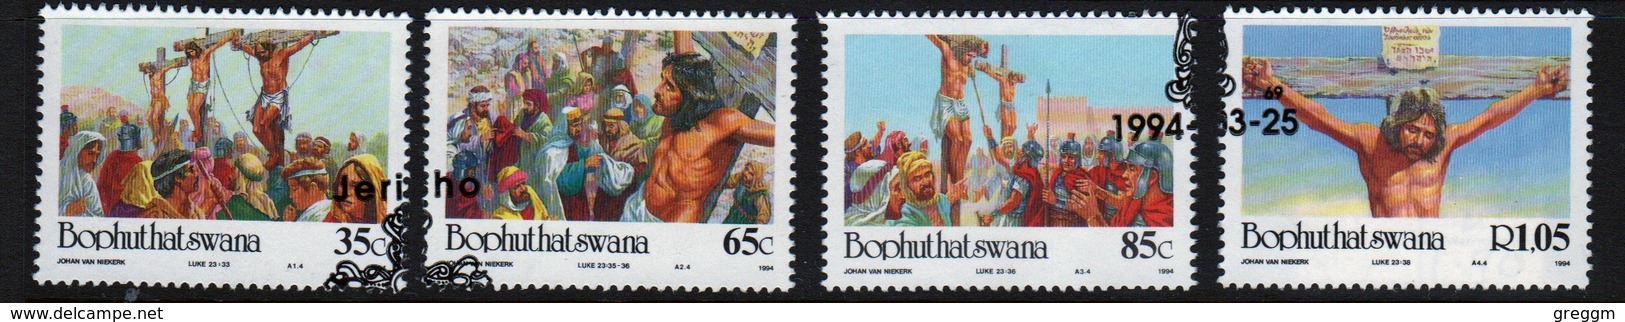 Bophuthatswana Set Of Stamps Celebrating Easter From 1994. - Bophuthatswana